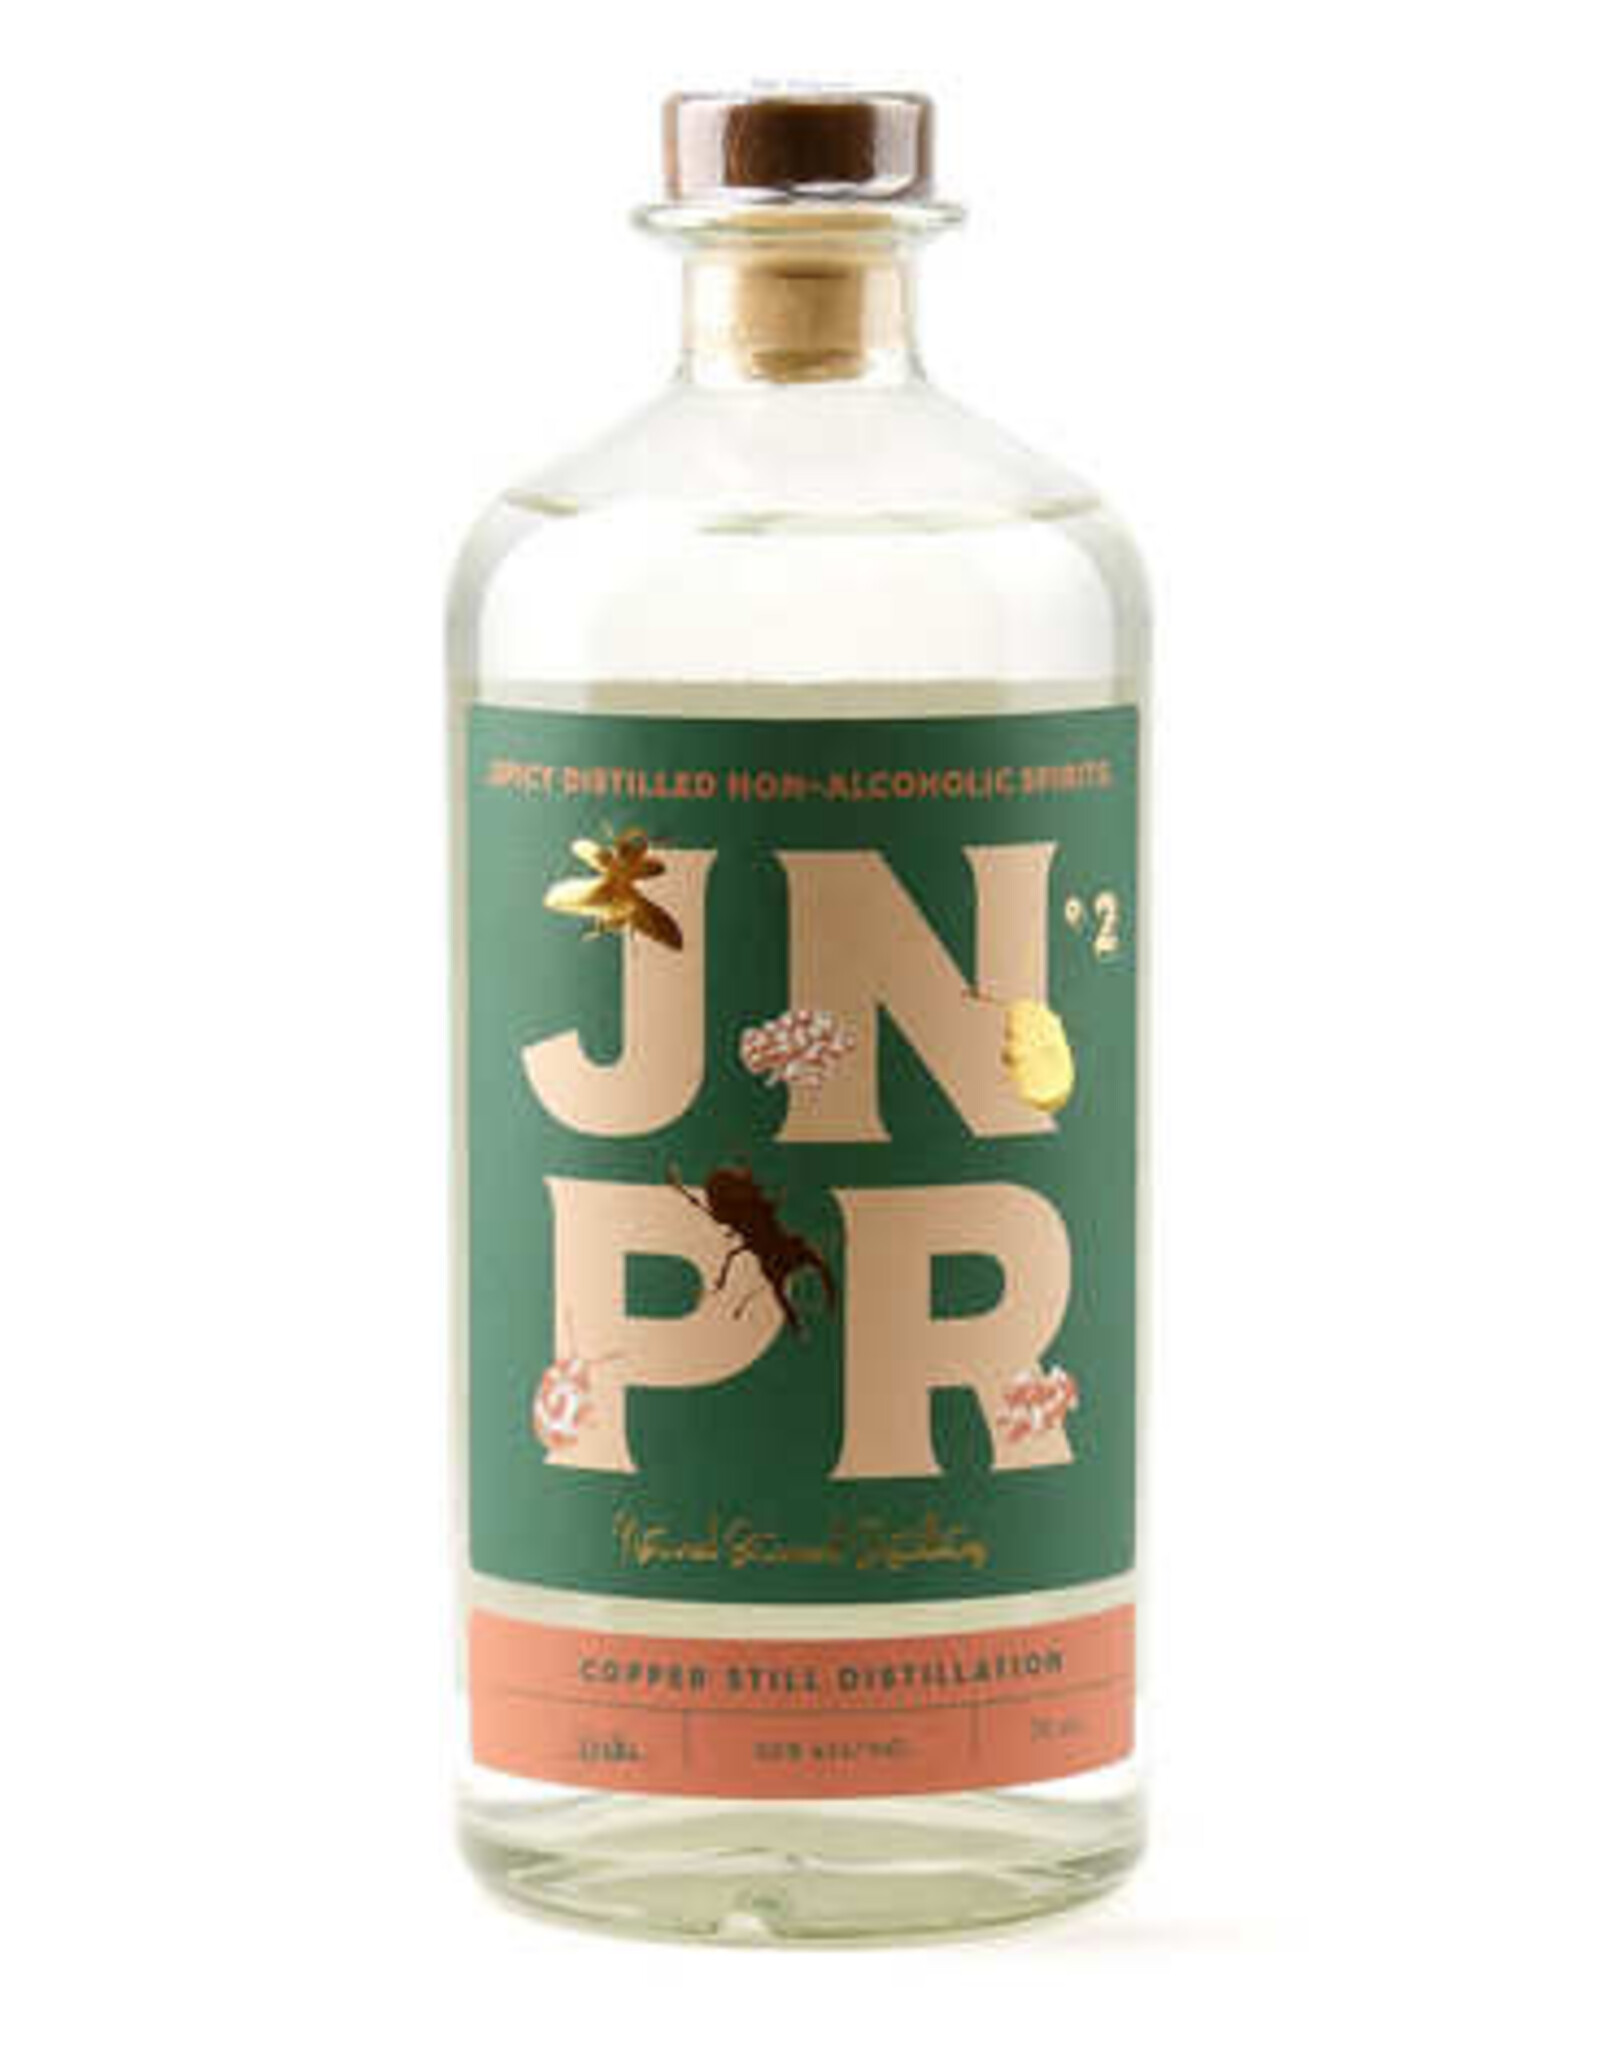 JNPR Spirits no 2